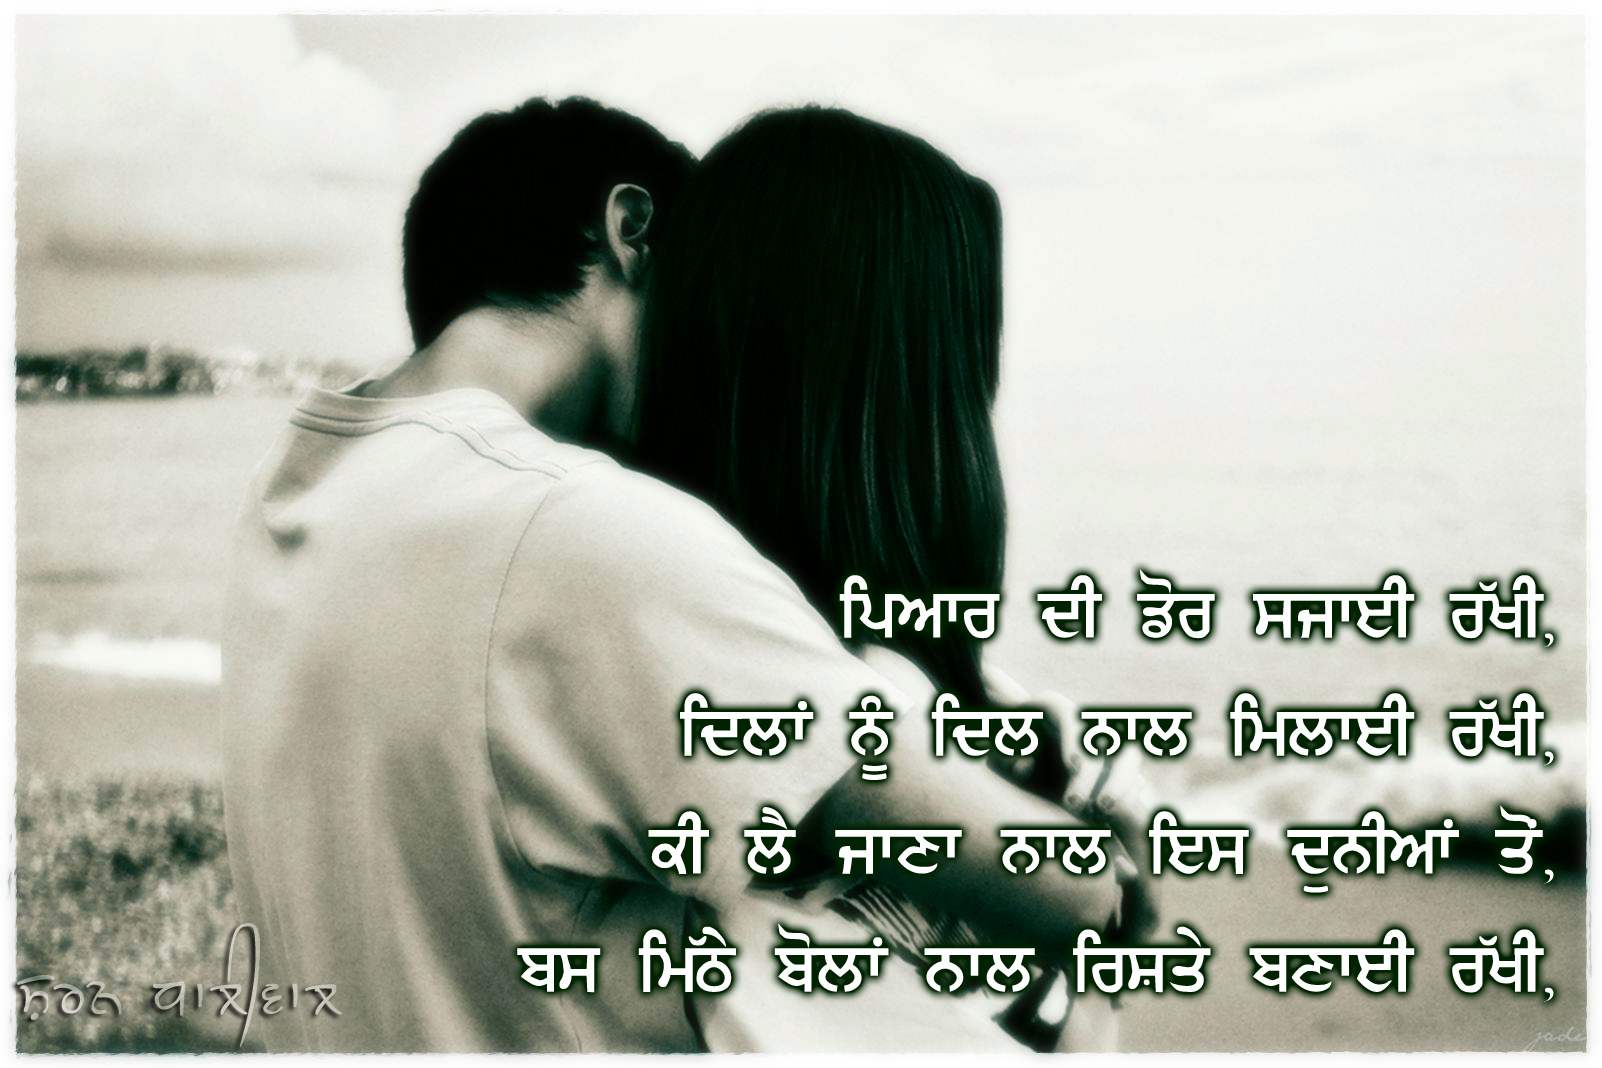 Download Punjabi Wallpaper - Romantic Love Quotes In Punjabi - HD Wallpaper 